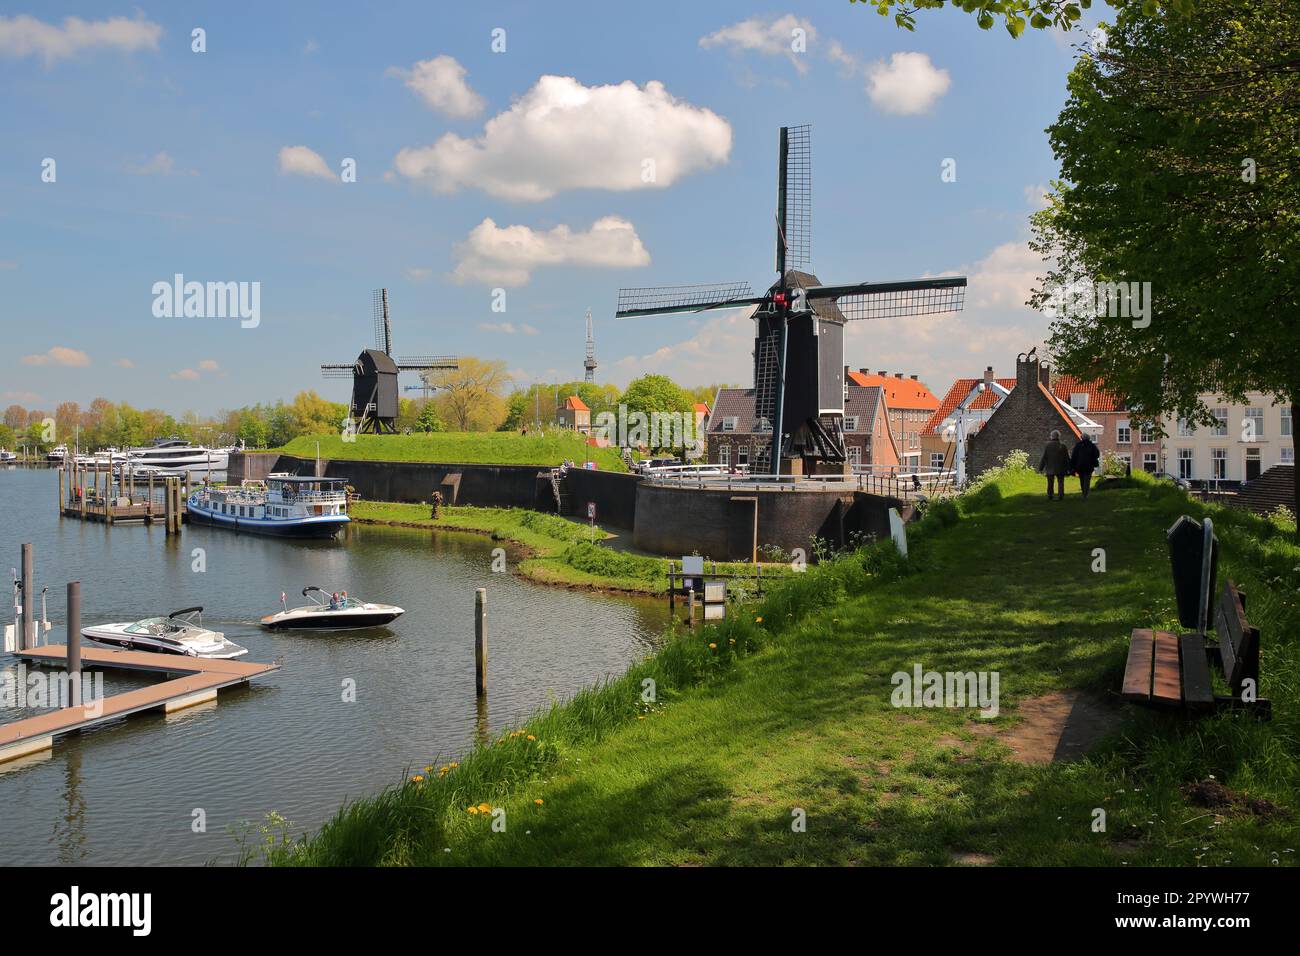 Der Hafen von Heusden, Nordbrabant, Niederlande, eine befestigte Stadt, 19km km von Hertogenbosch entfernt, mit Windmühlen und Anlegebooten Stockfoto